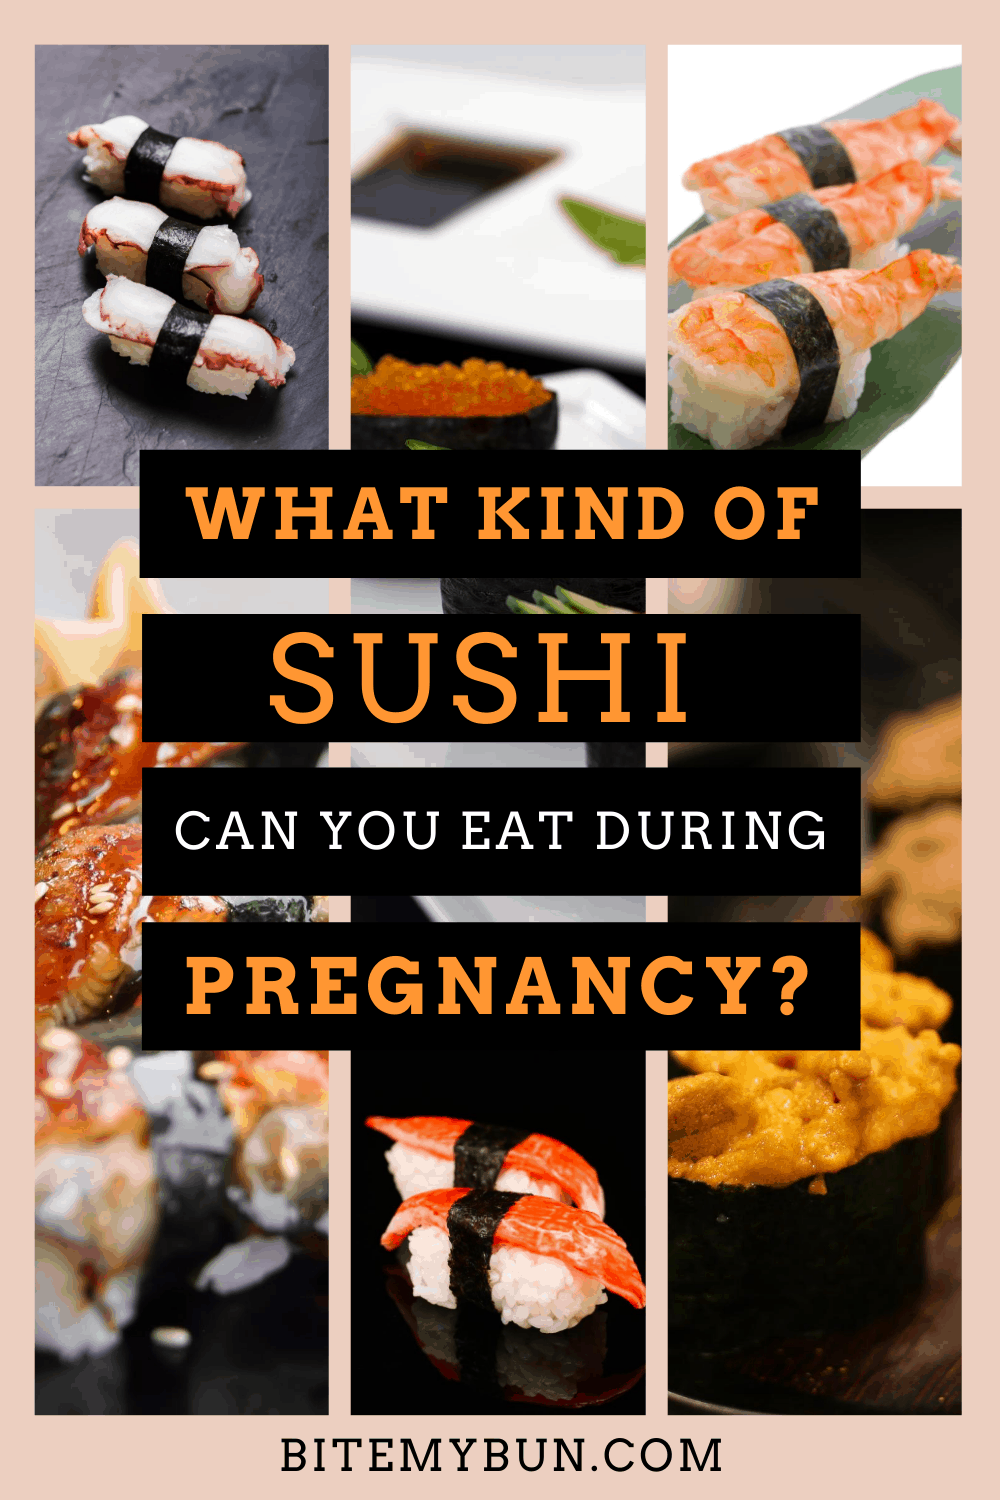 Que tipo de sushi você pode comer de sua grávida